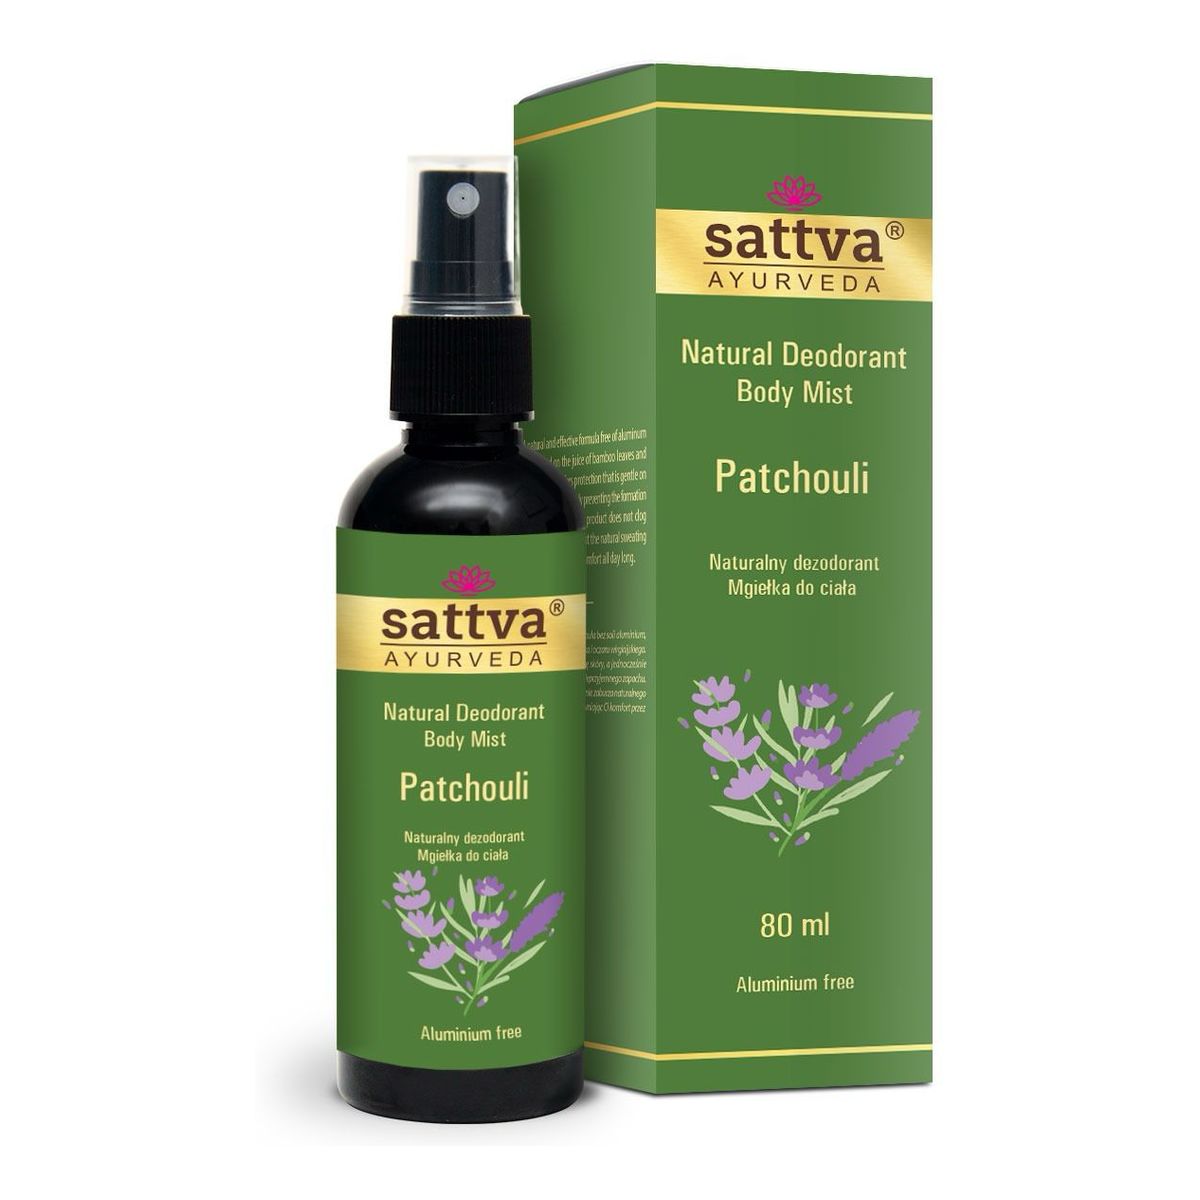 Sattva Natural Deodorant Body Mist naturalny Dezodorant w formie mgiełki do ciała patchouli 80ml